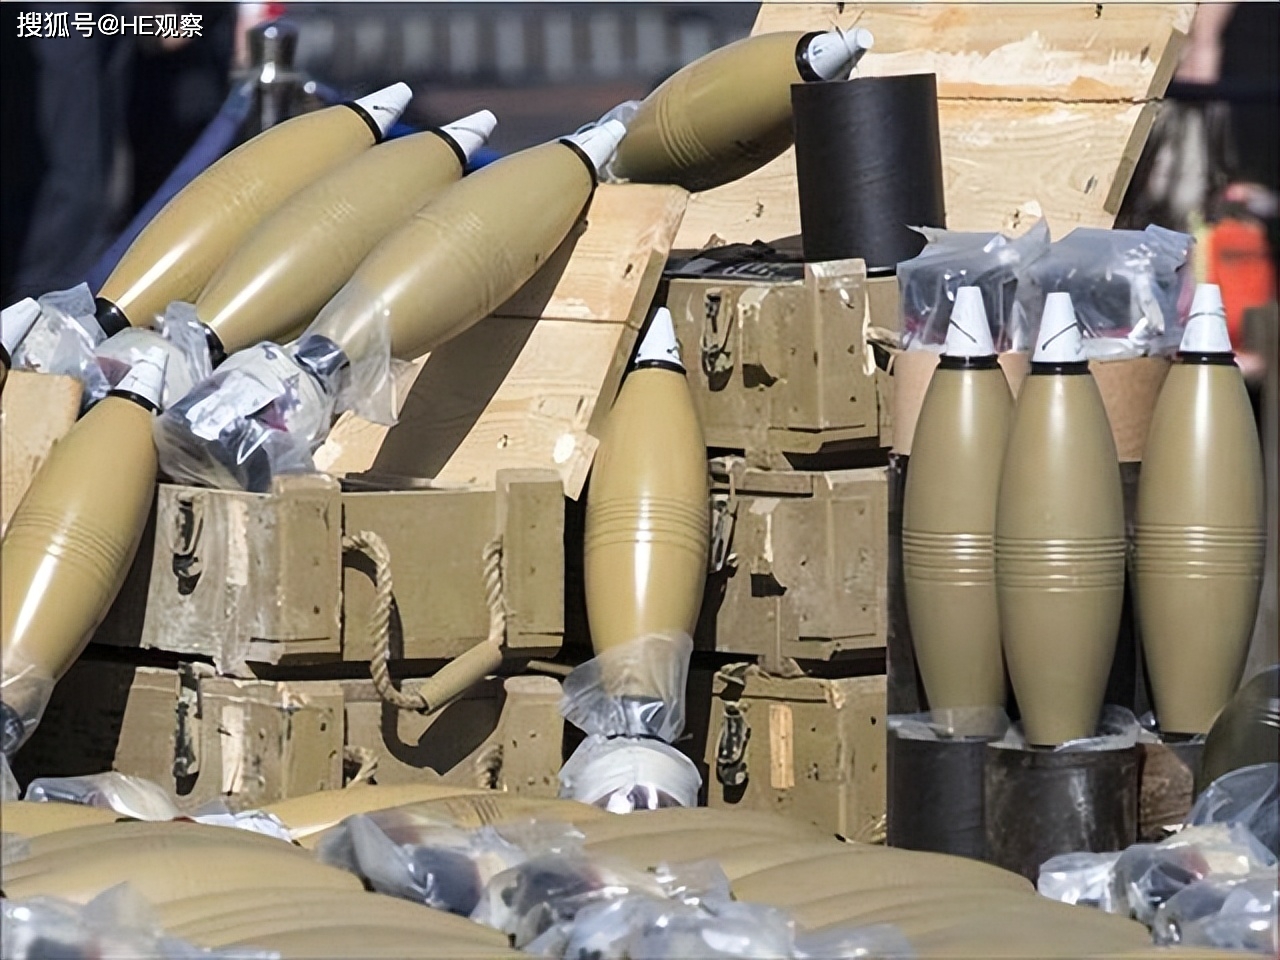 英媒爆料:伊朗已向俄罗斯出售弹药,多达一亿发子弹,30万发炮弹